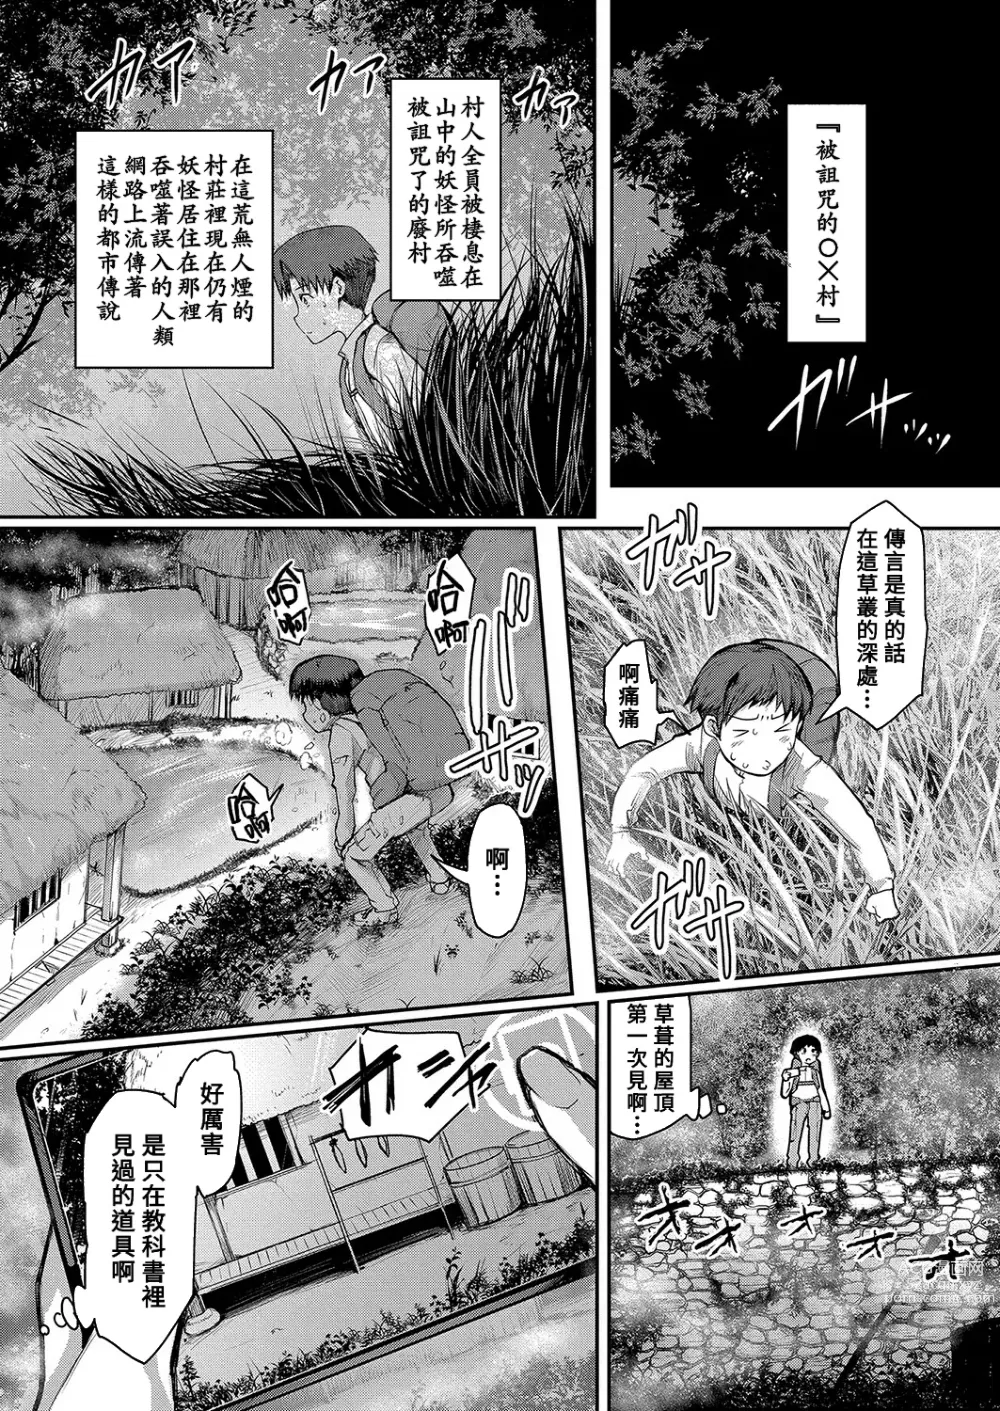 Page 2 of manga Yamajyukujyo